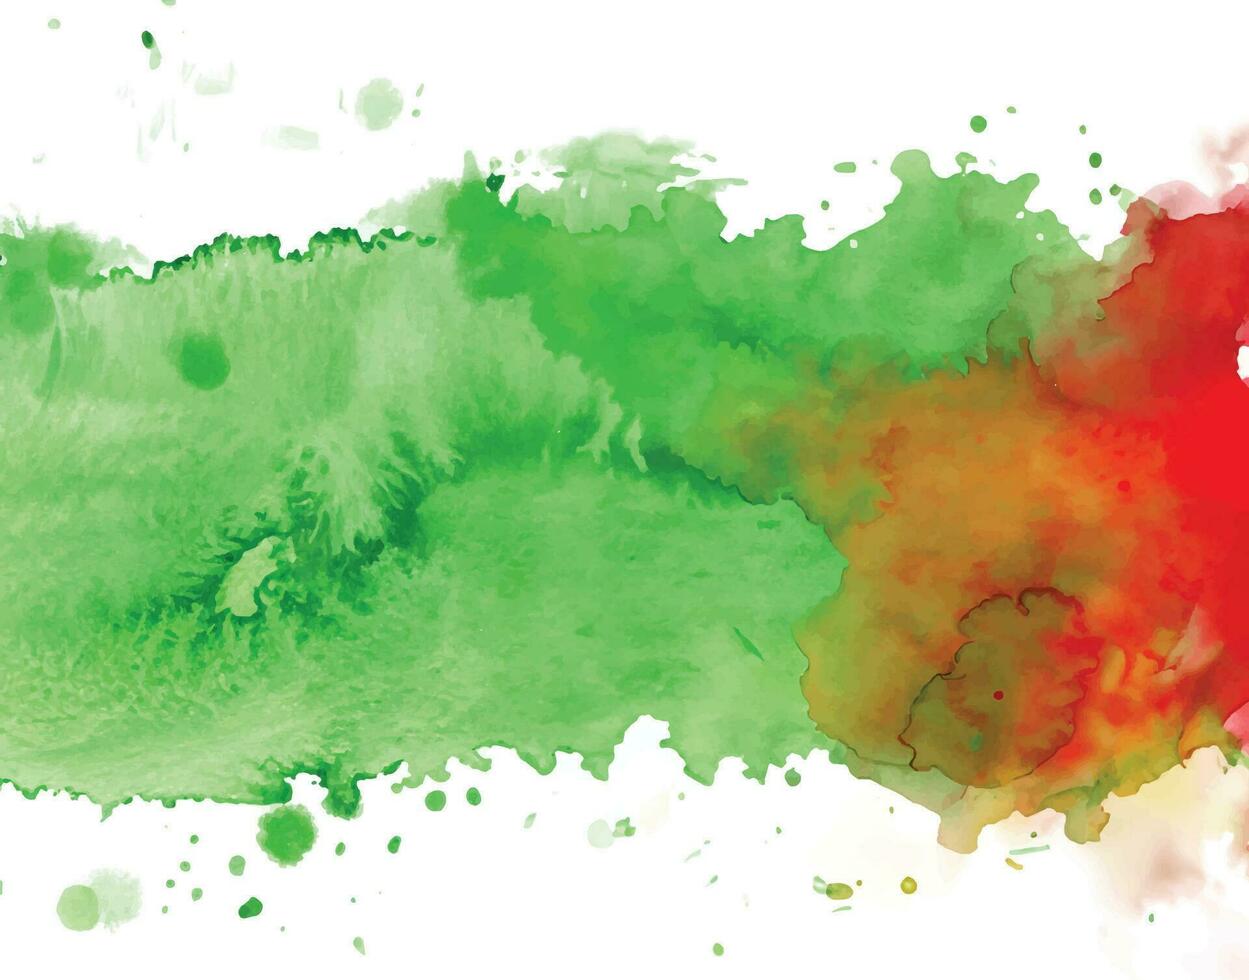 abstrato fundo com uma colorida aguarela Espirrar Projeto vetor